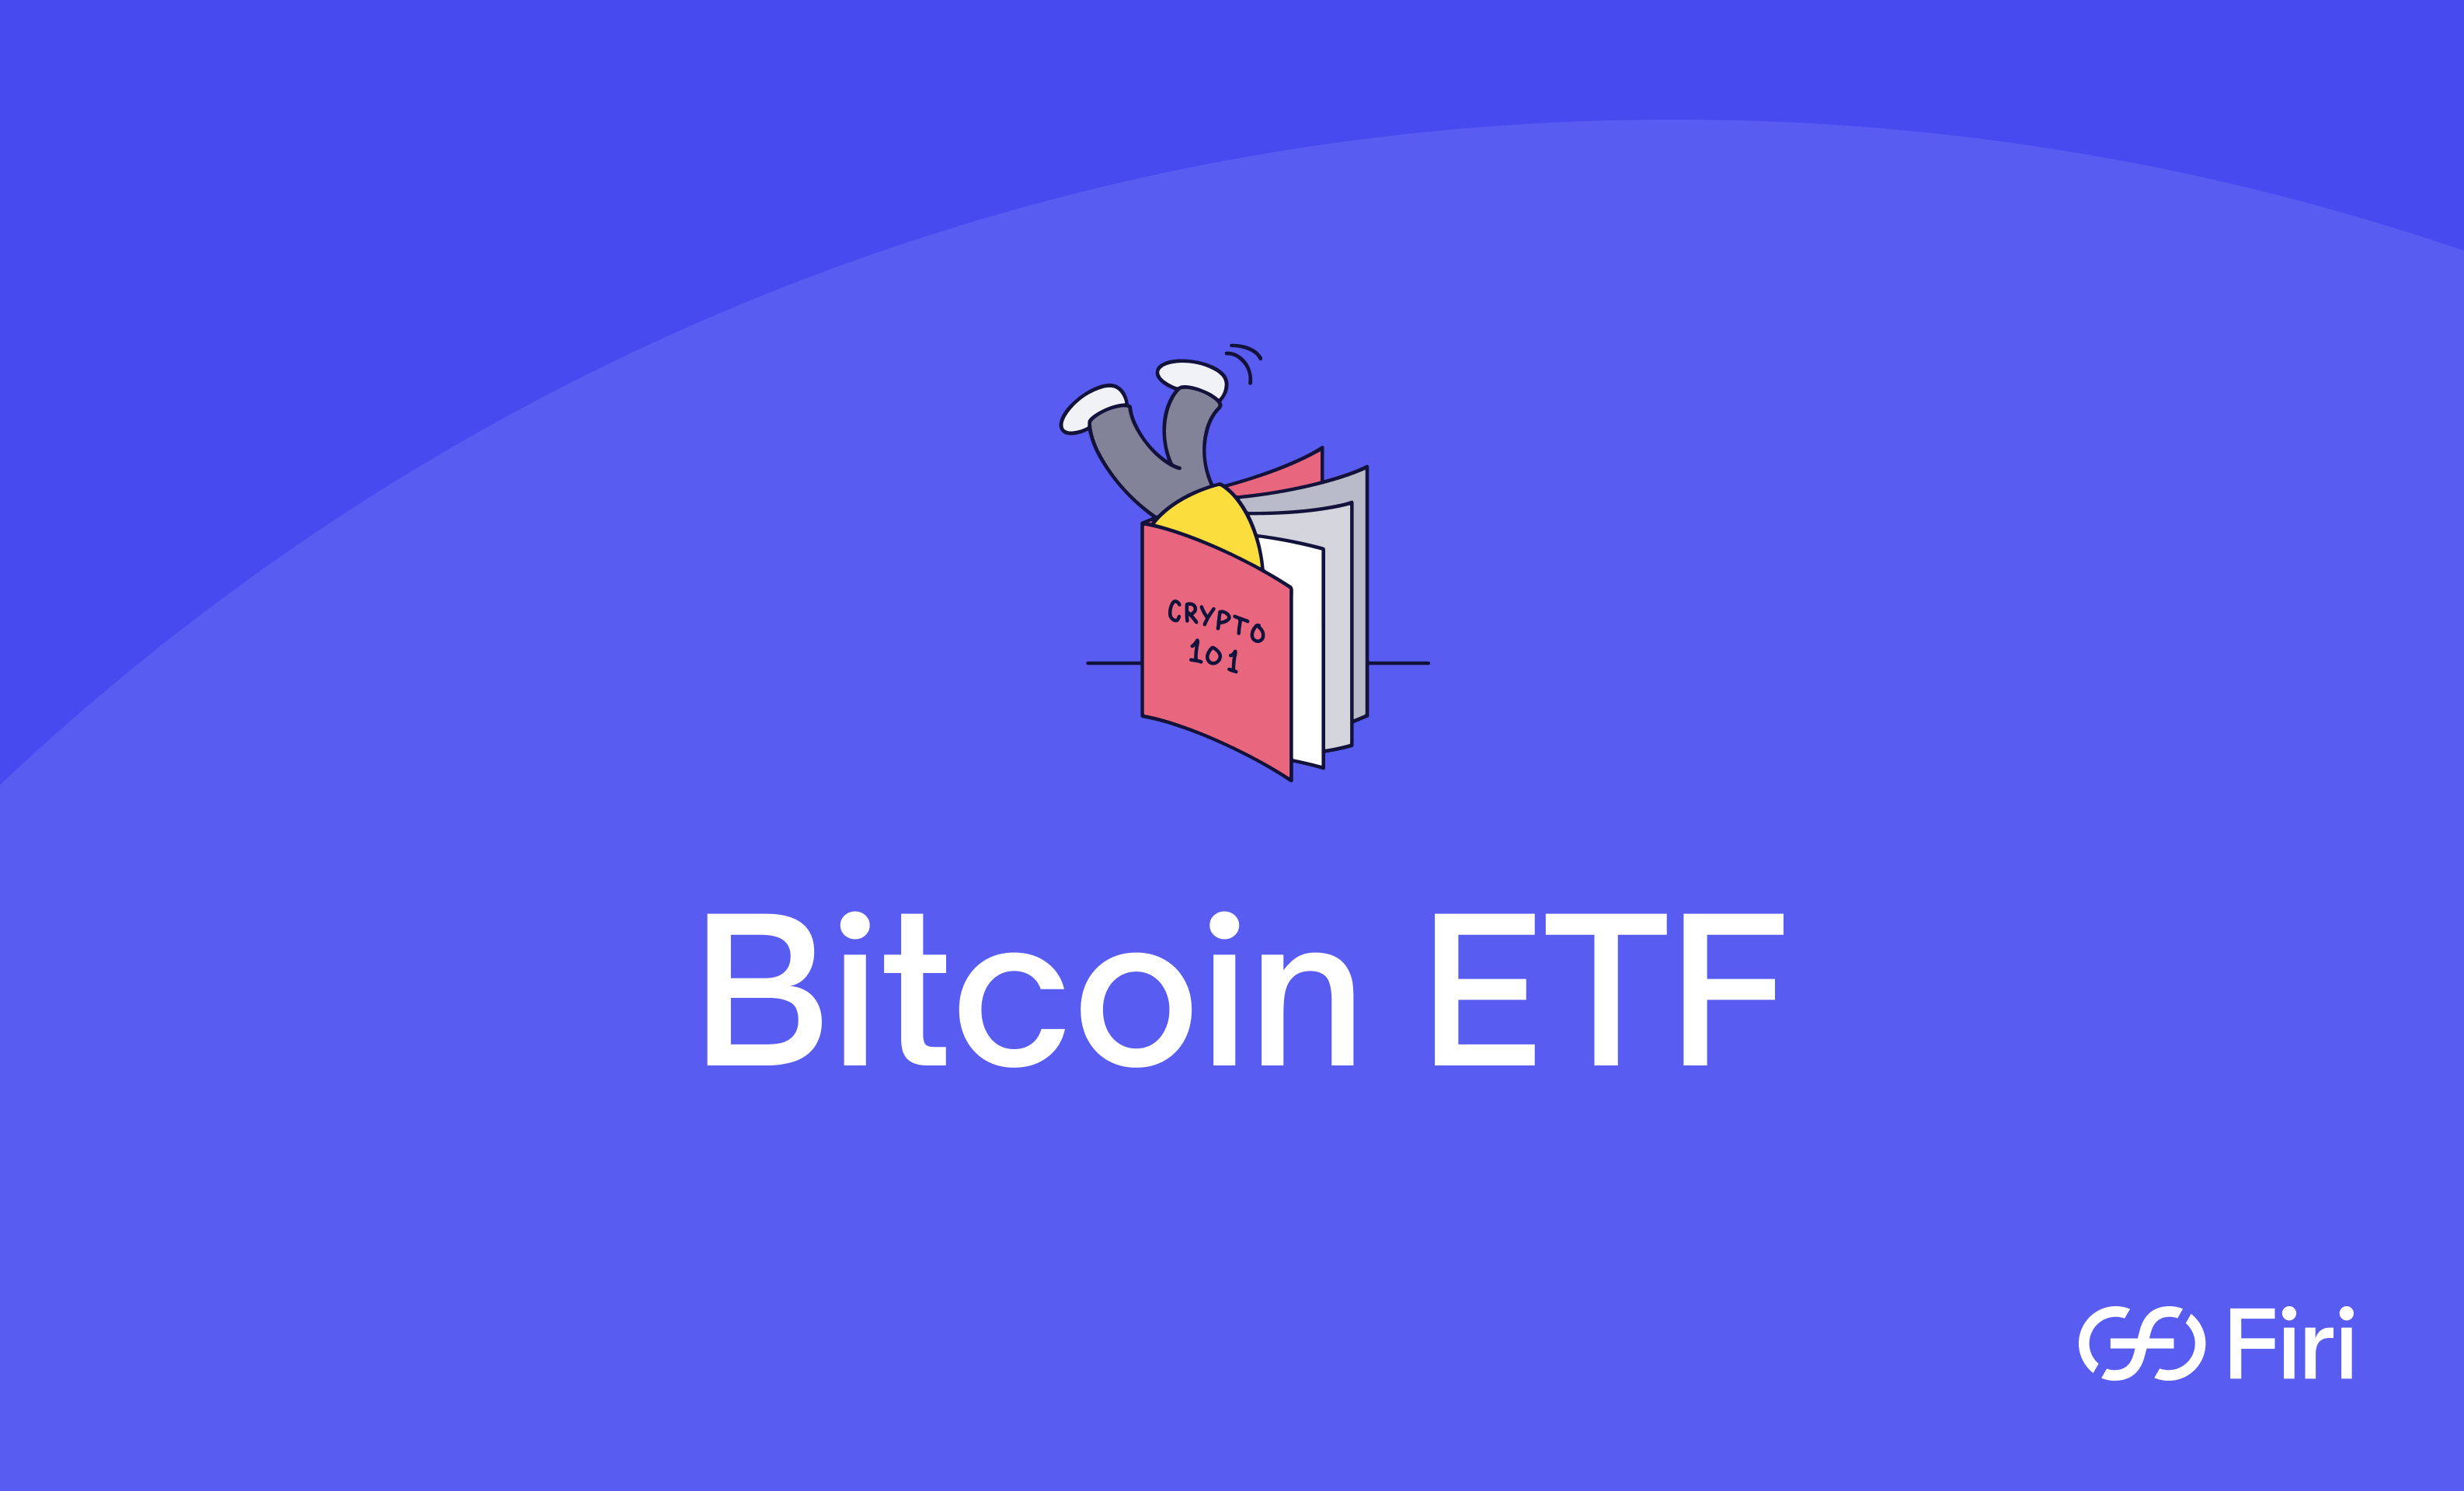 Bilde av en som stuper ned i kryptoleksikon og vil lære mer om Bitcoin ETF